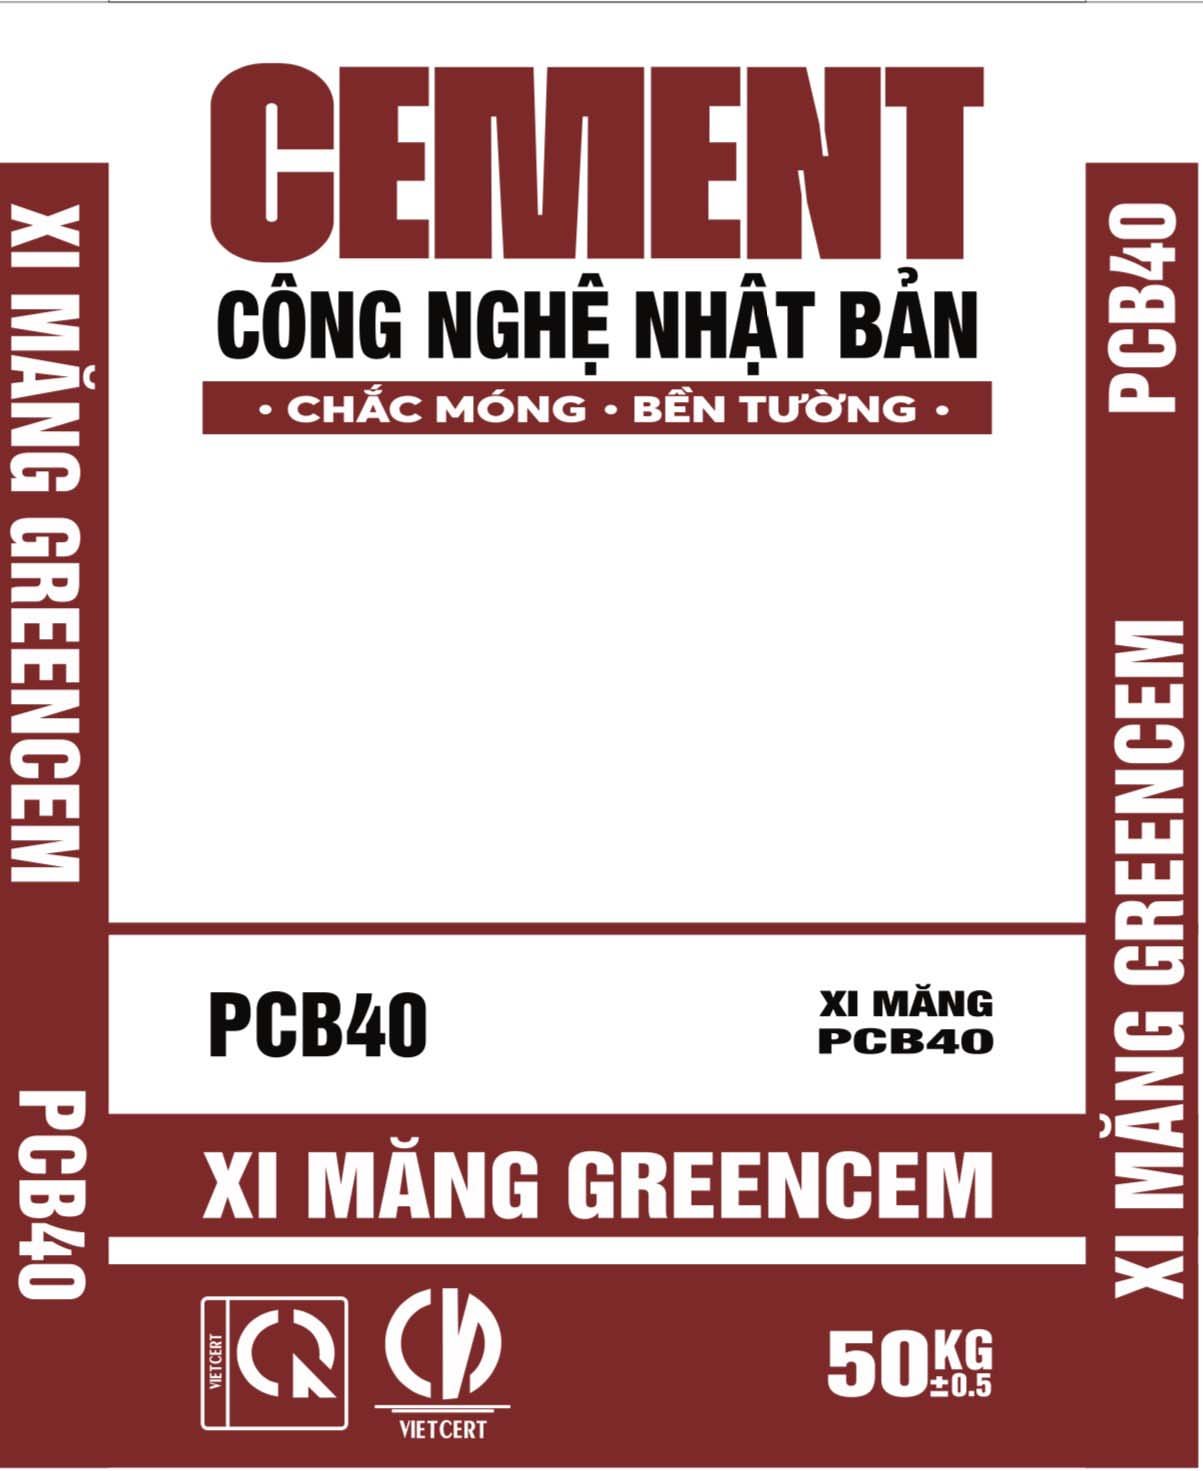 Xi măng Greencem PCB40